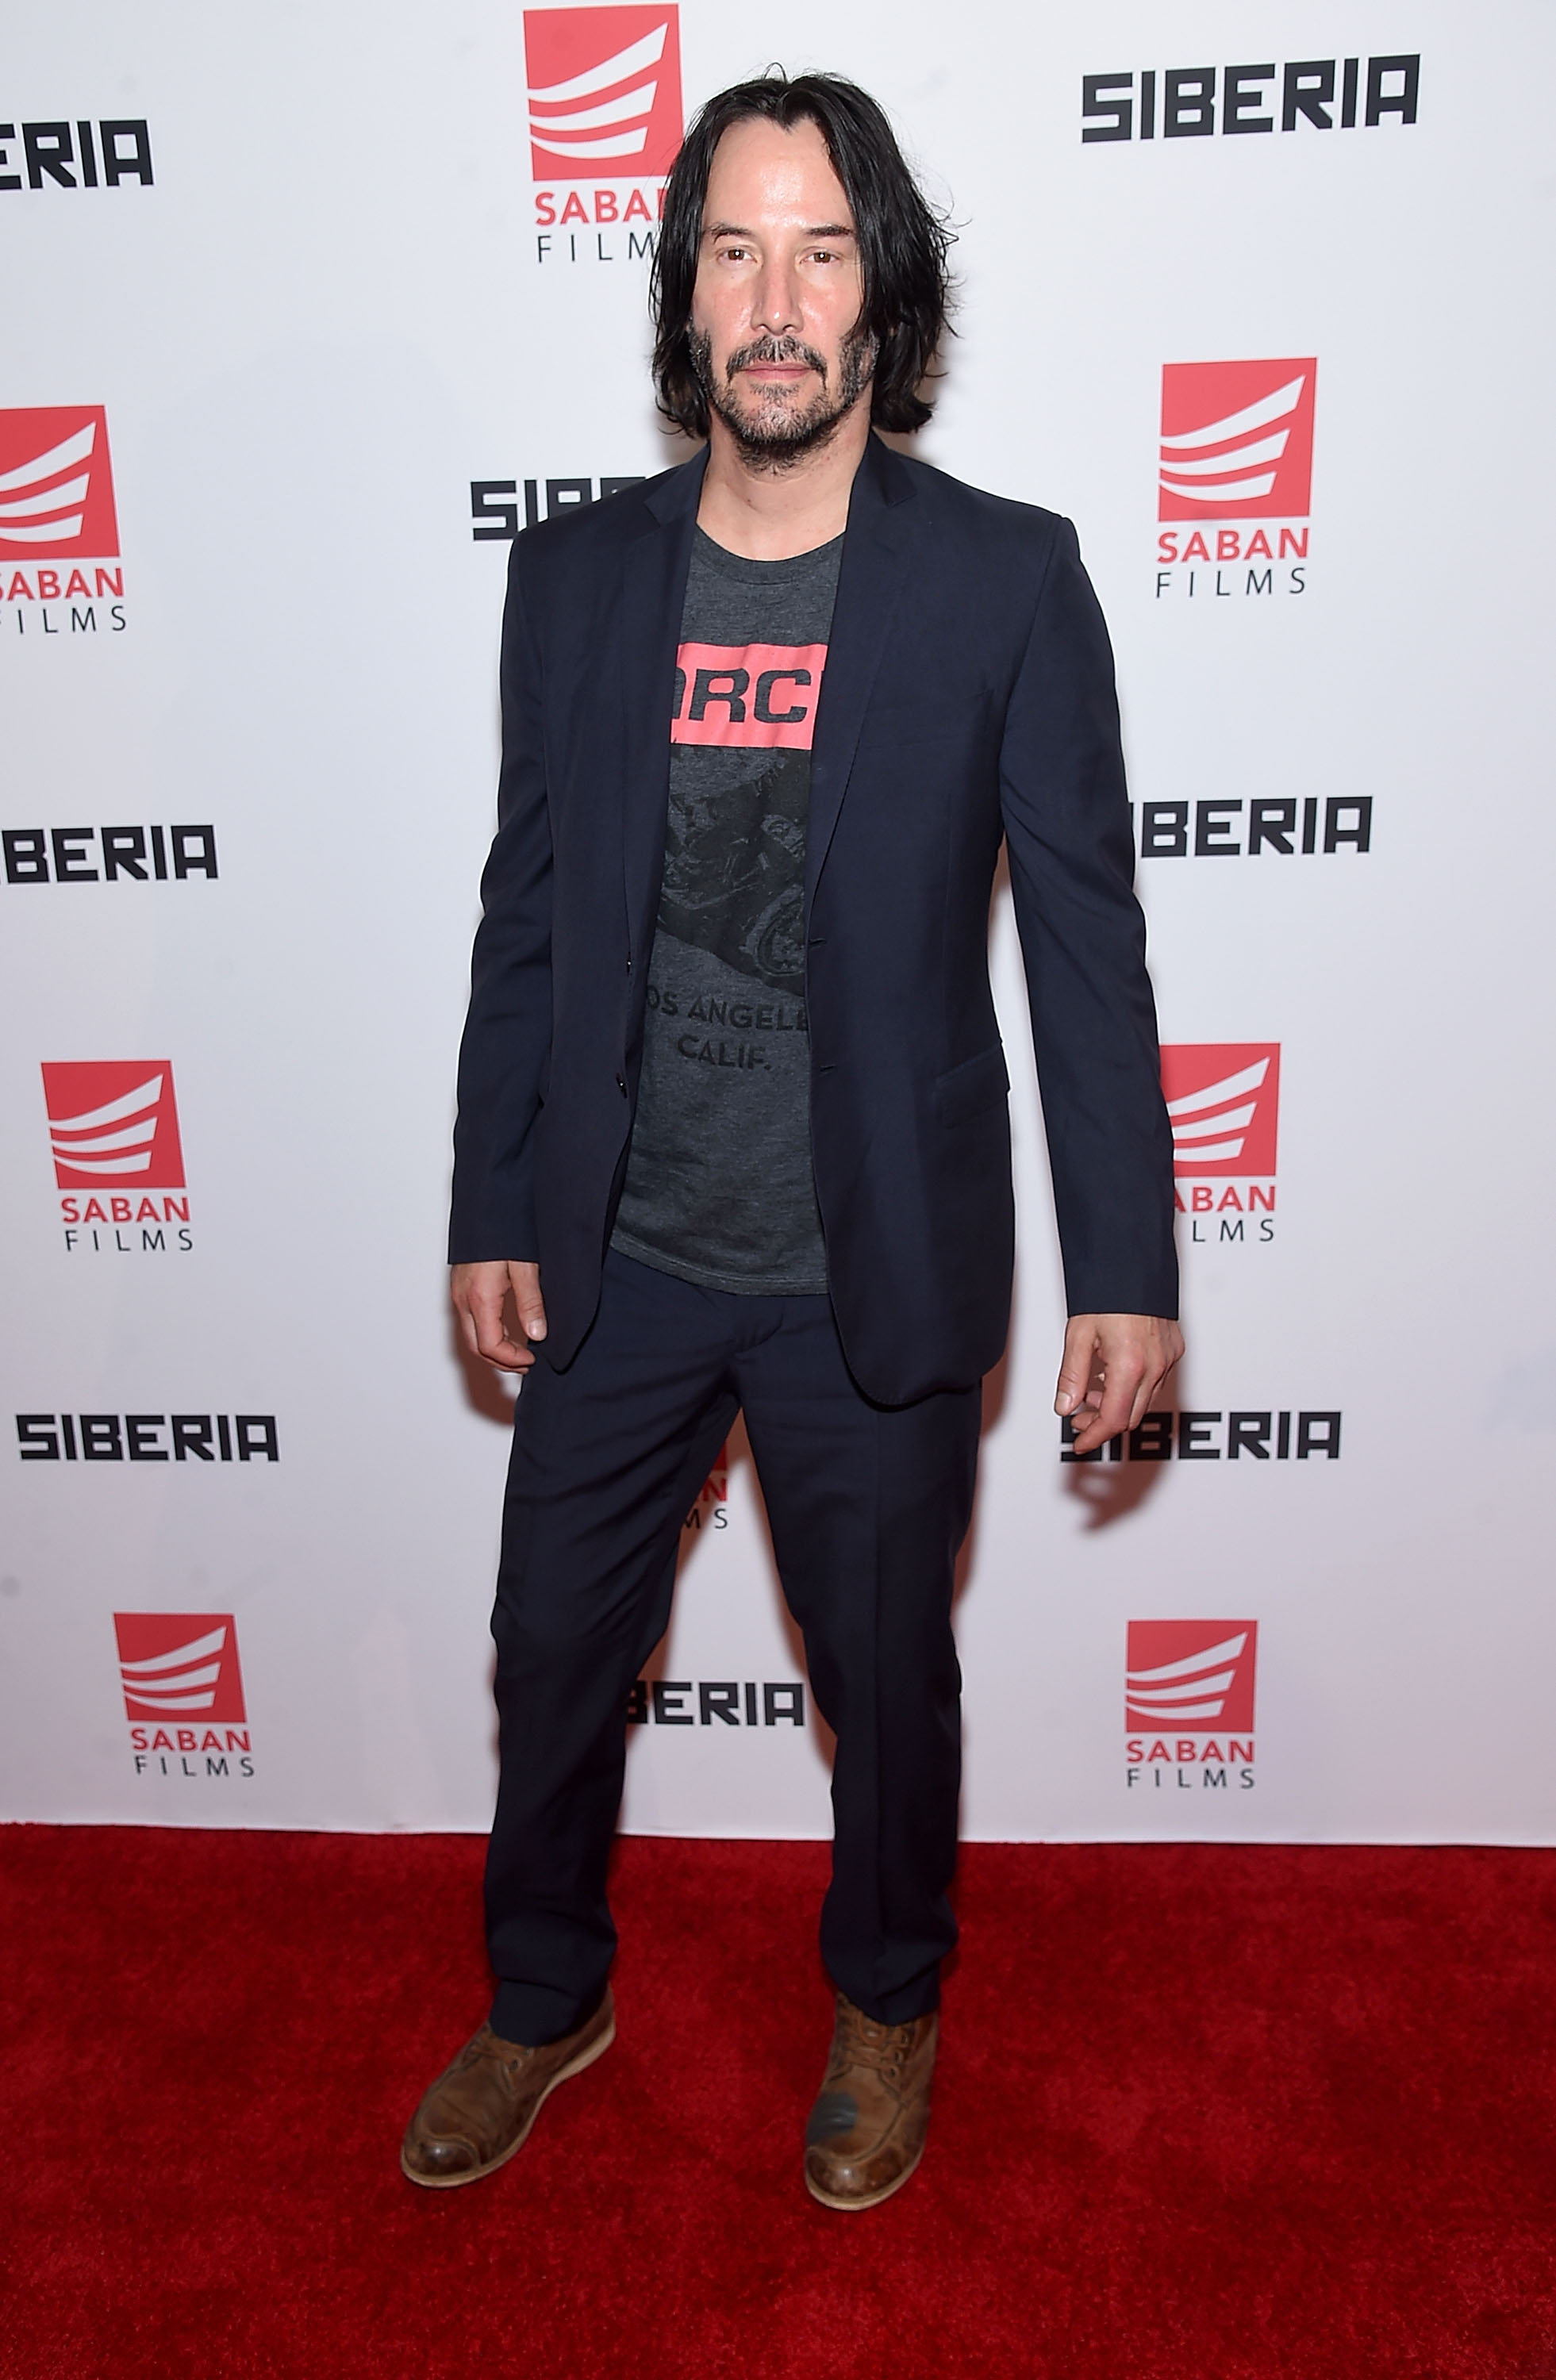 Keanu Reeves en el estreno de "Siberia" en Nueva York, el 11 de julio de 2018. | Fuente: Getty Images